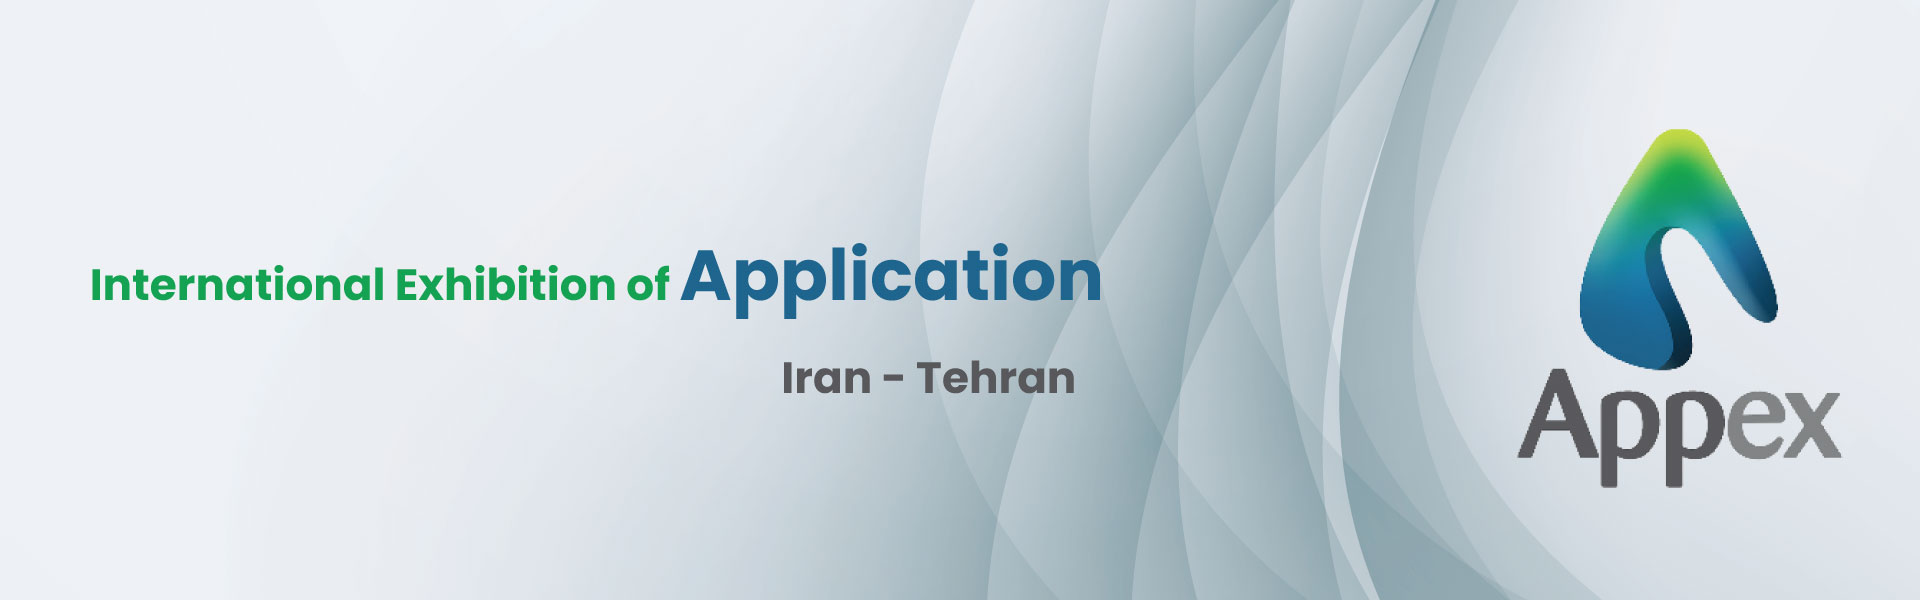 Application Exhibition of Iran Tehran (APEX)